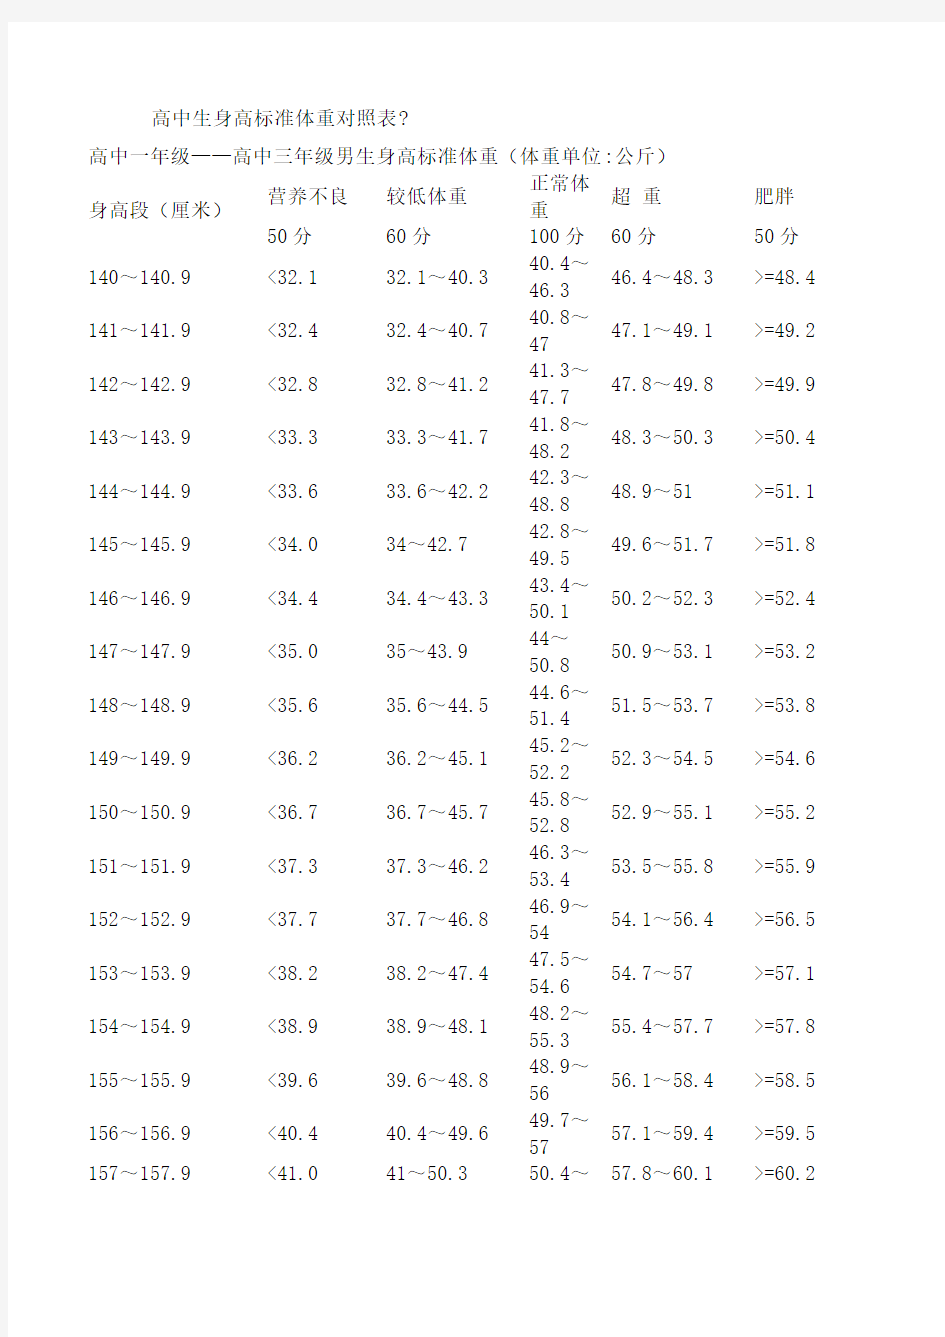 高中生身高标准体重对照表(终审稿)